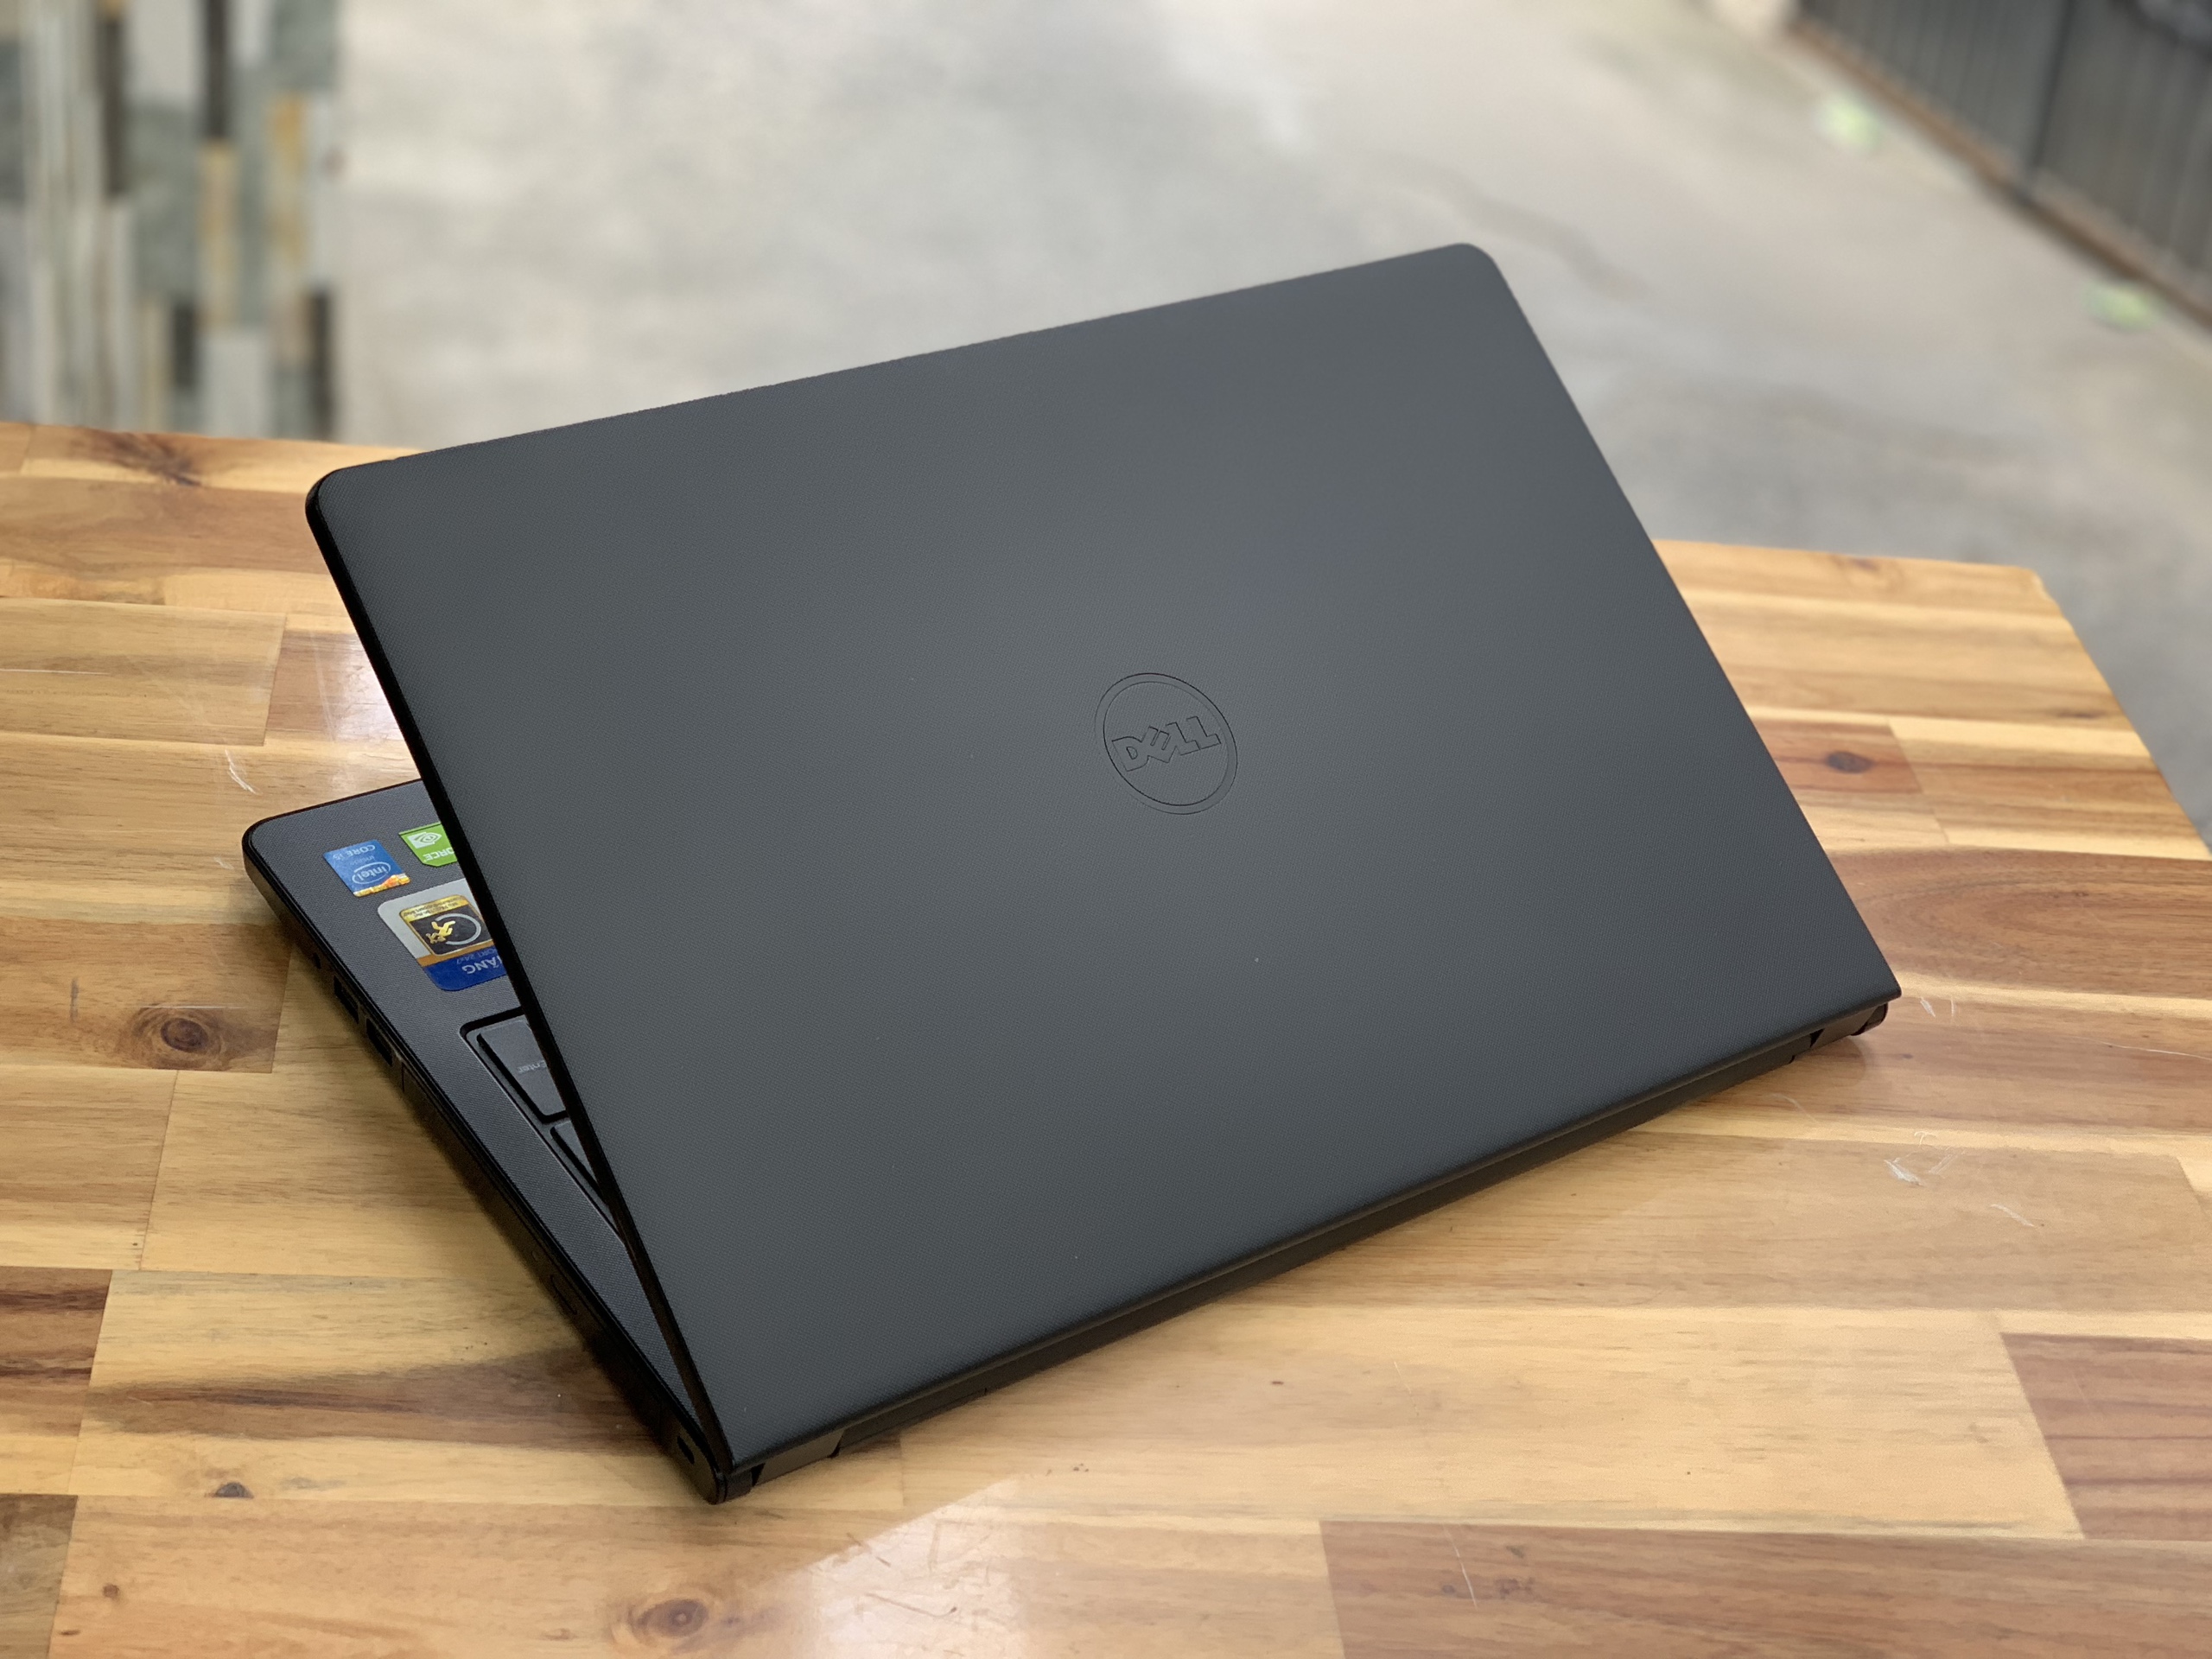 Laptop Dell Inspiron 3542, i3 4005U 4G 500G đẹp zin 100% Giá rẻ1